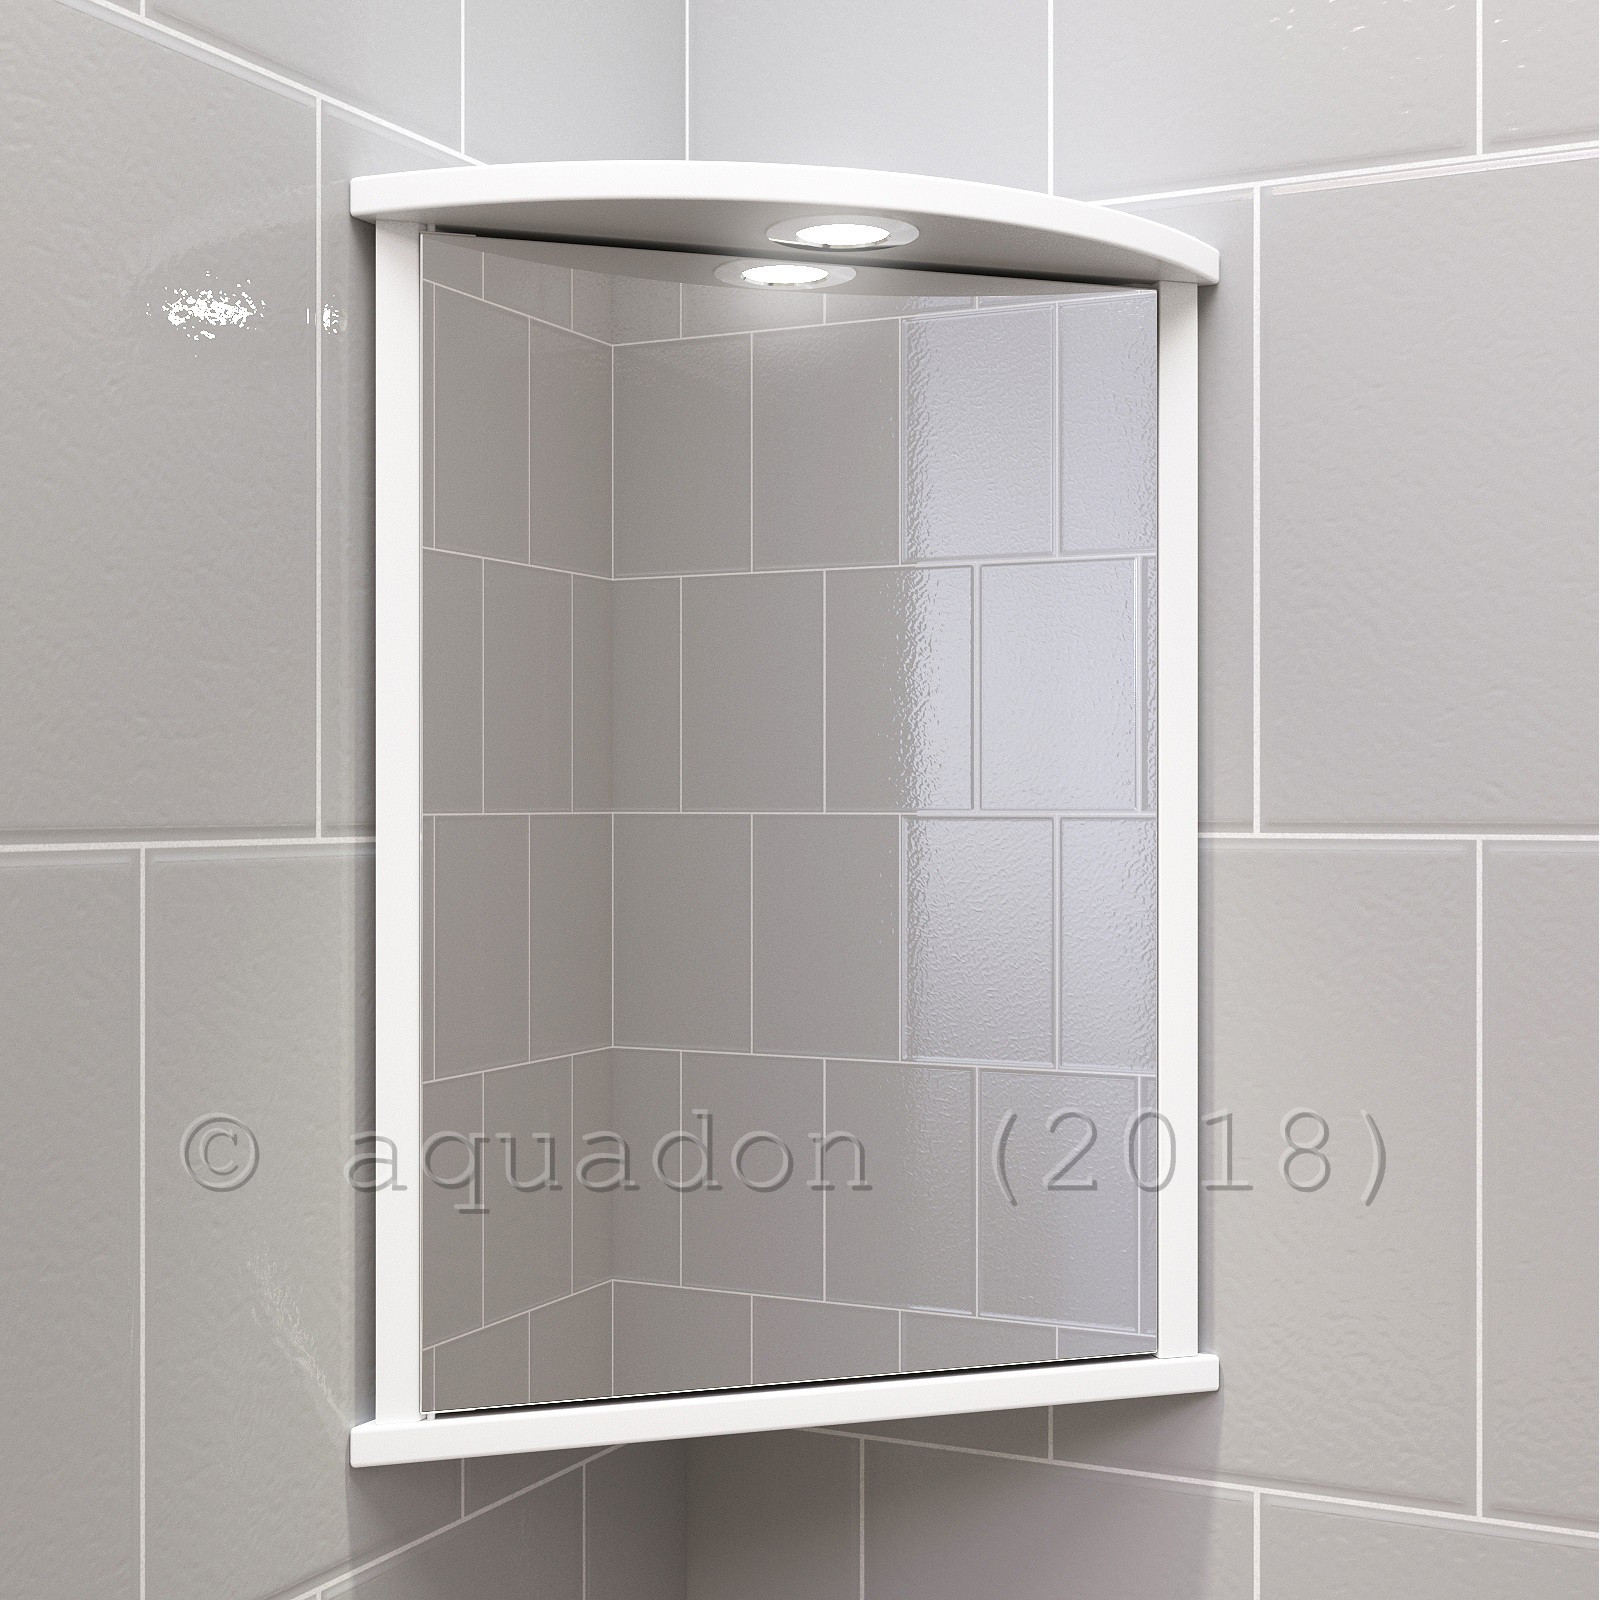 Corner Mirror Bathroom Cabinet
 Bathroom Wall Corner Mirror Cabinet White Single Door